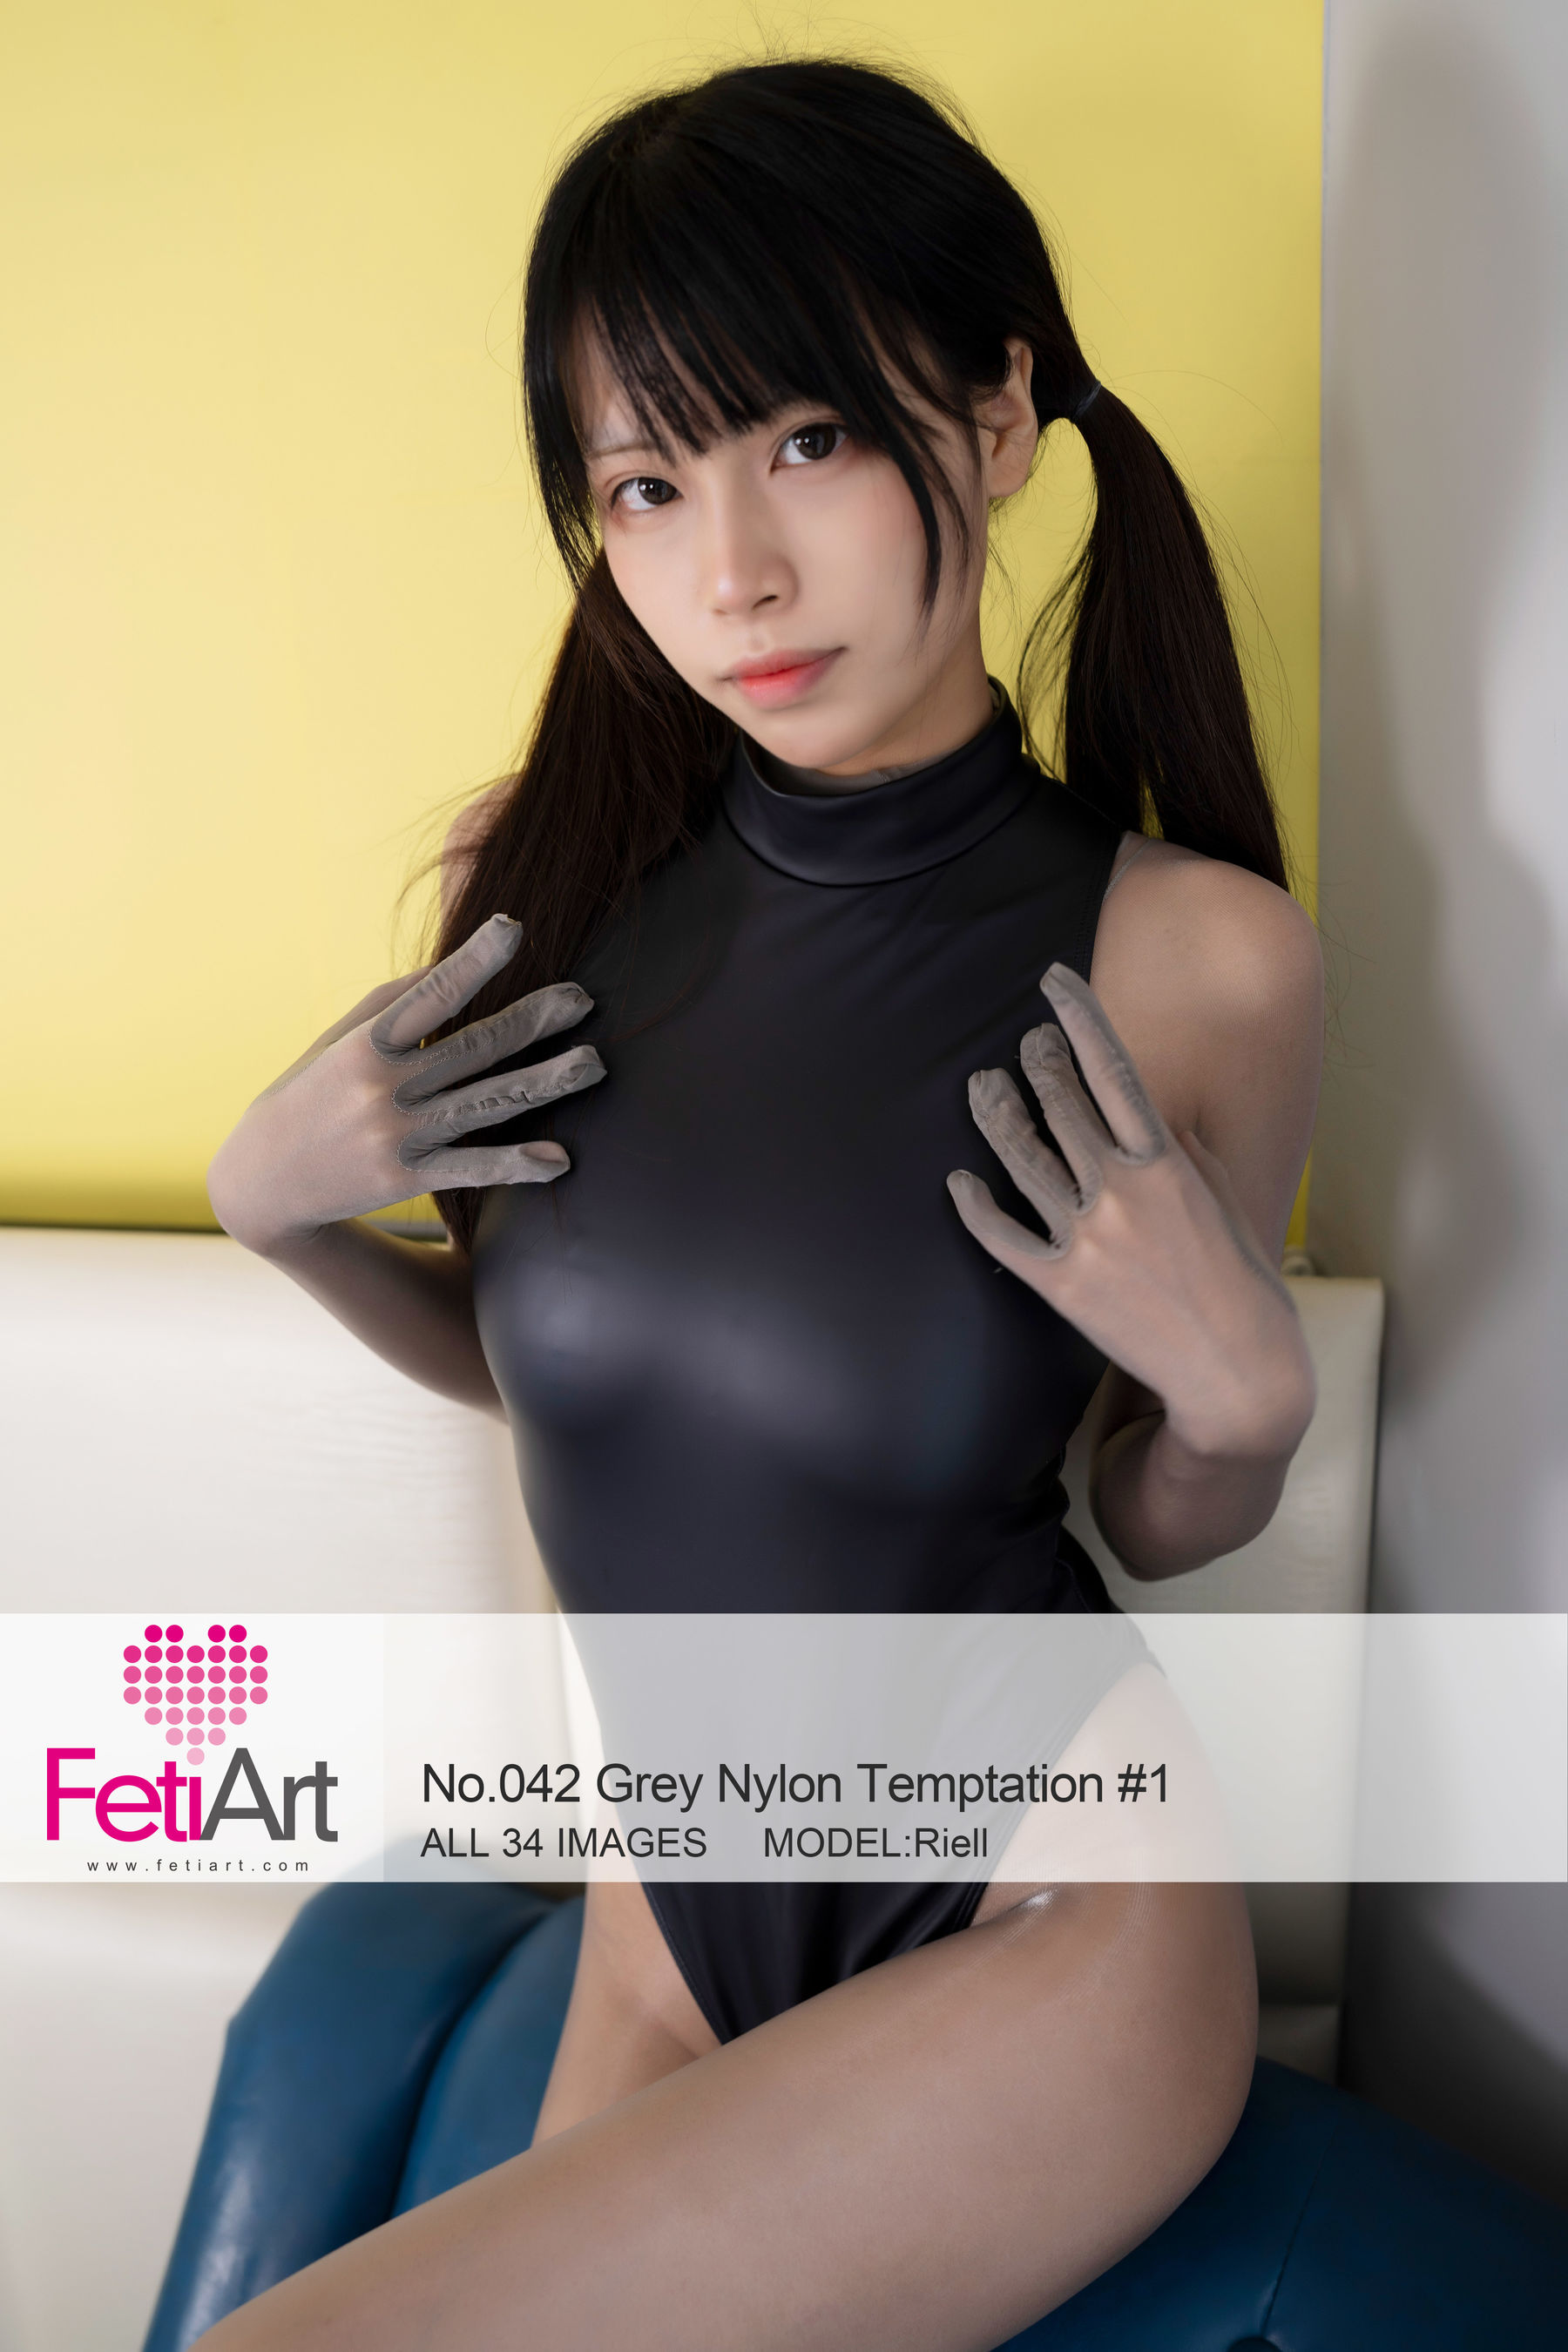 [尚物集FetiArt] No.042 Grey Nylon Temptation MODEL-Riell